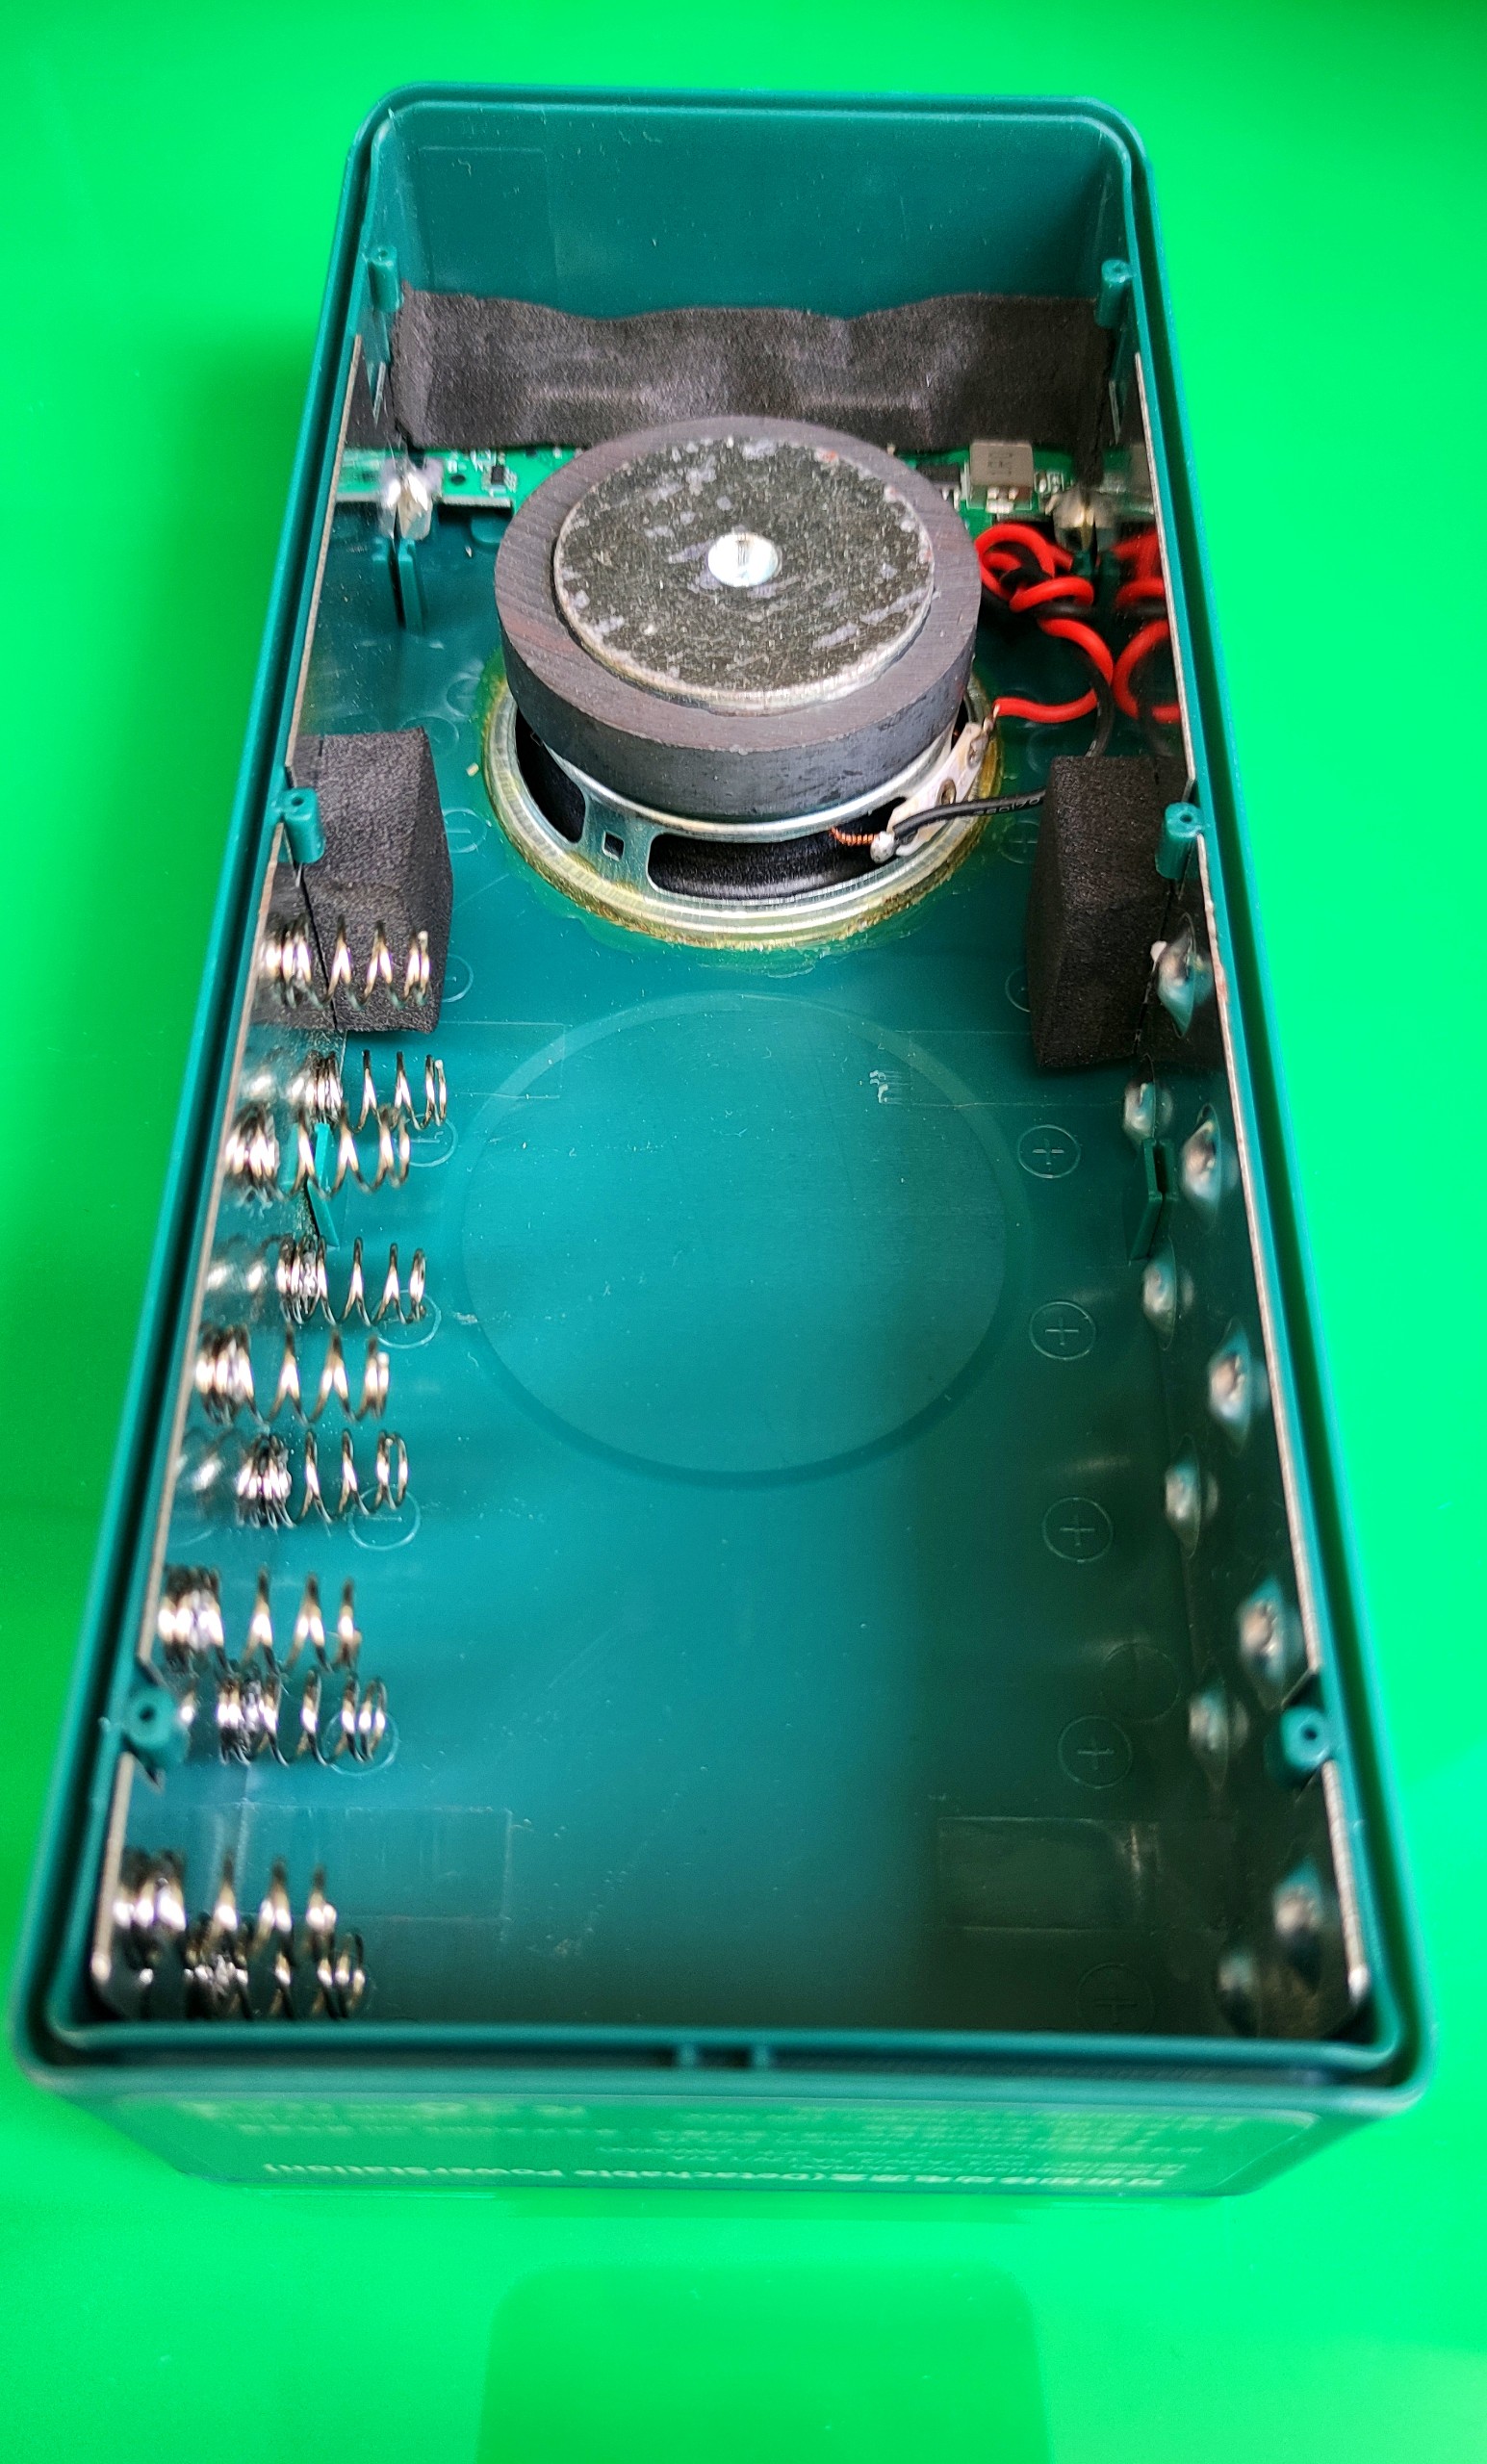 Box sạc dự phòng tích hợp Loa Bluetooth 5.0 âm thanh sống động 10 cell 18650 chất lượng cao màu xanh lá